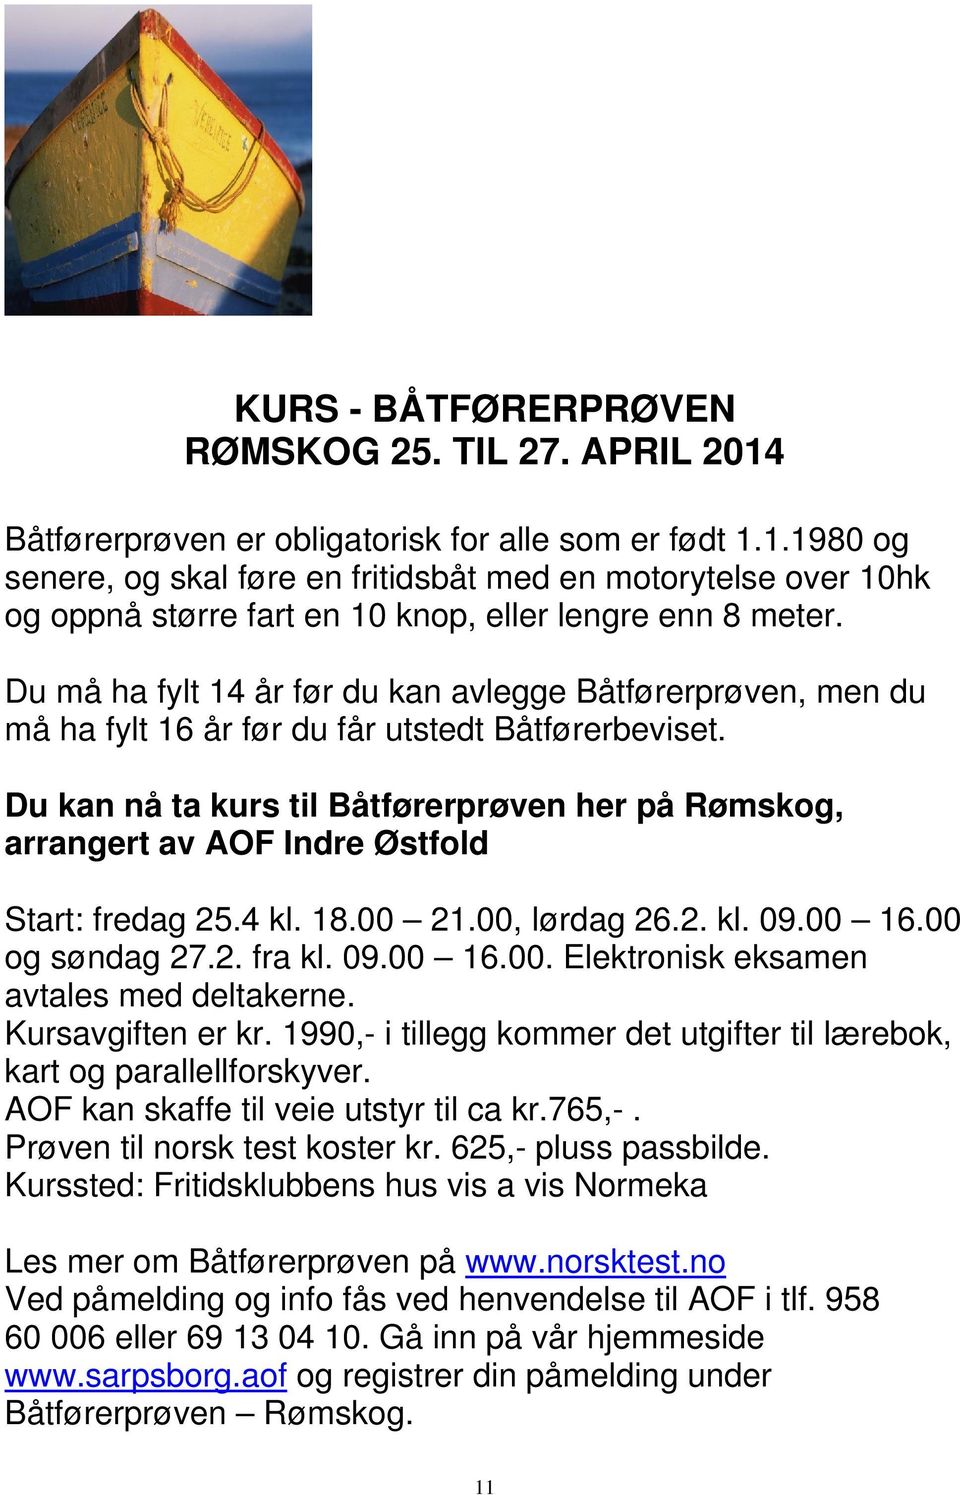 Du kan nå ta kurs til Båtførerprøven her på Rømskog, arrangert av AOF Indre Østfold Start: fredag 25.4 kl. 18.00 21.00, lørdag 26.2. kl. 09.00 16.00 og søndag 27.2. fra kl. 09.00 16.00. Elektronisk eksamen avtales med deltakerne.